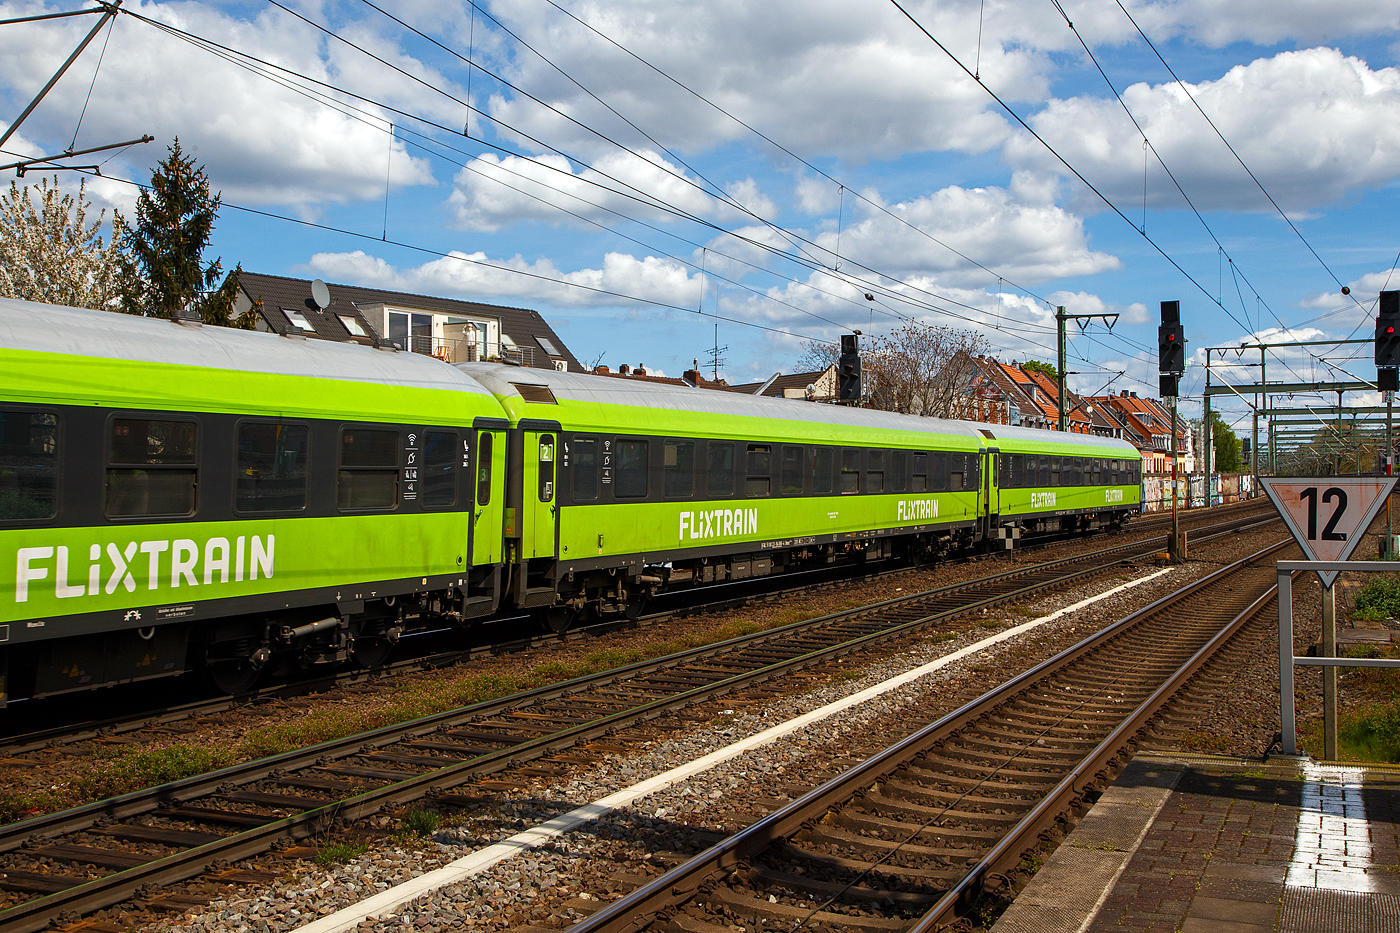 Der 2. Klasse Schnellzugwagen D-TAL 51 80 22-94 886-4 der Gattung/Bauart Bmmz 264.4F der Firma Talbot Services GmbH vermietet an FlixTrain am 30.04.2023 im Zugverbund, als Wagen 2 vom FlixTrain FLX 1230, bei der Durchfahrt im Bahnhof Kln-Ehrenfeld.